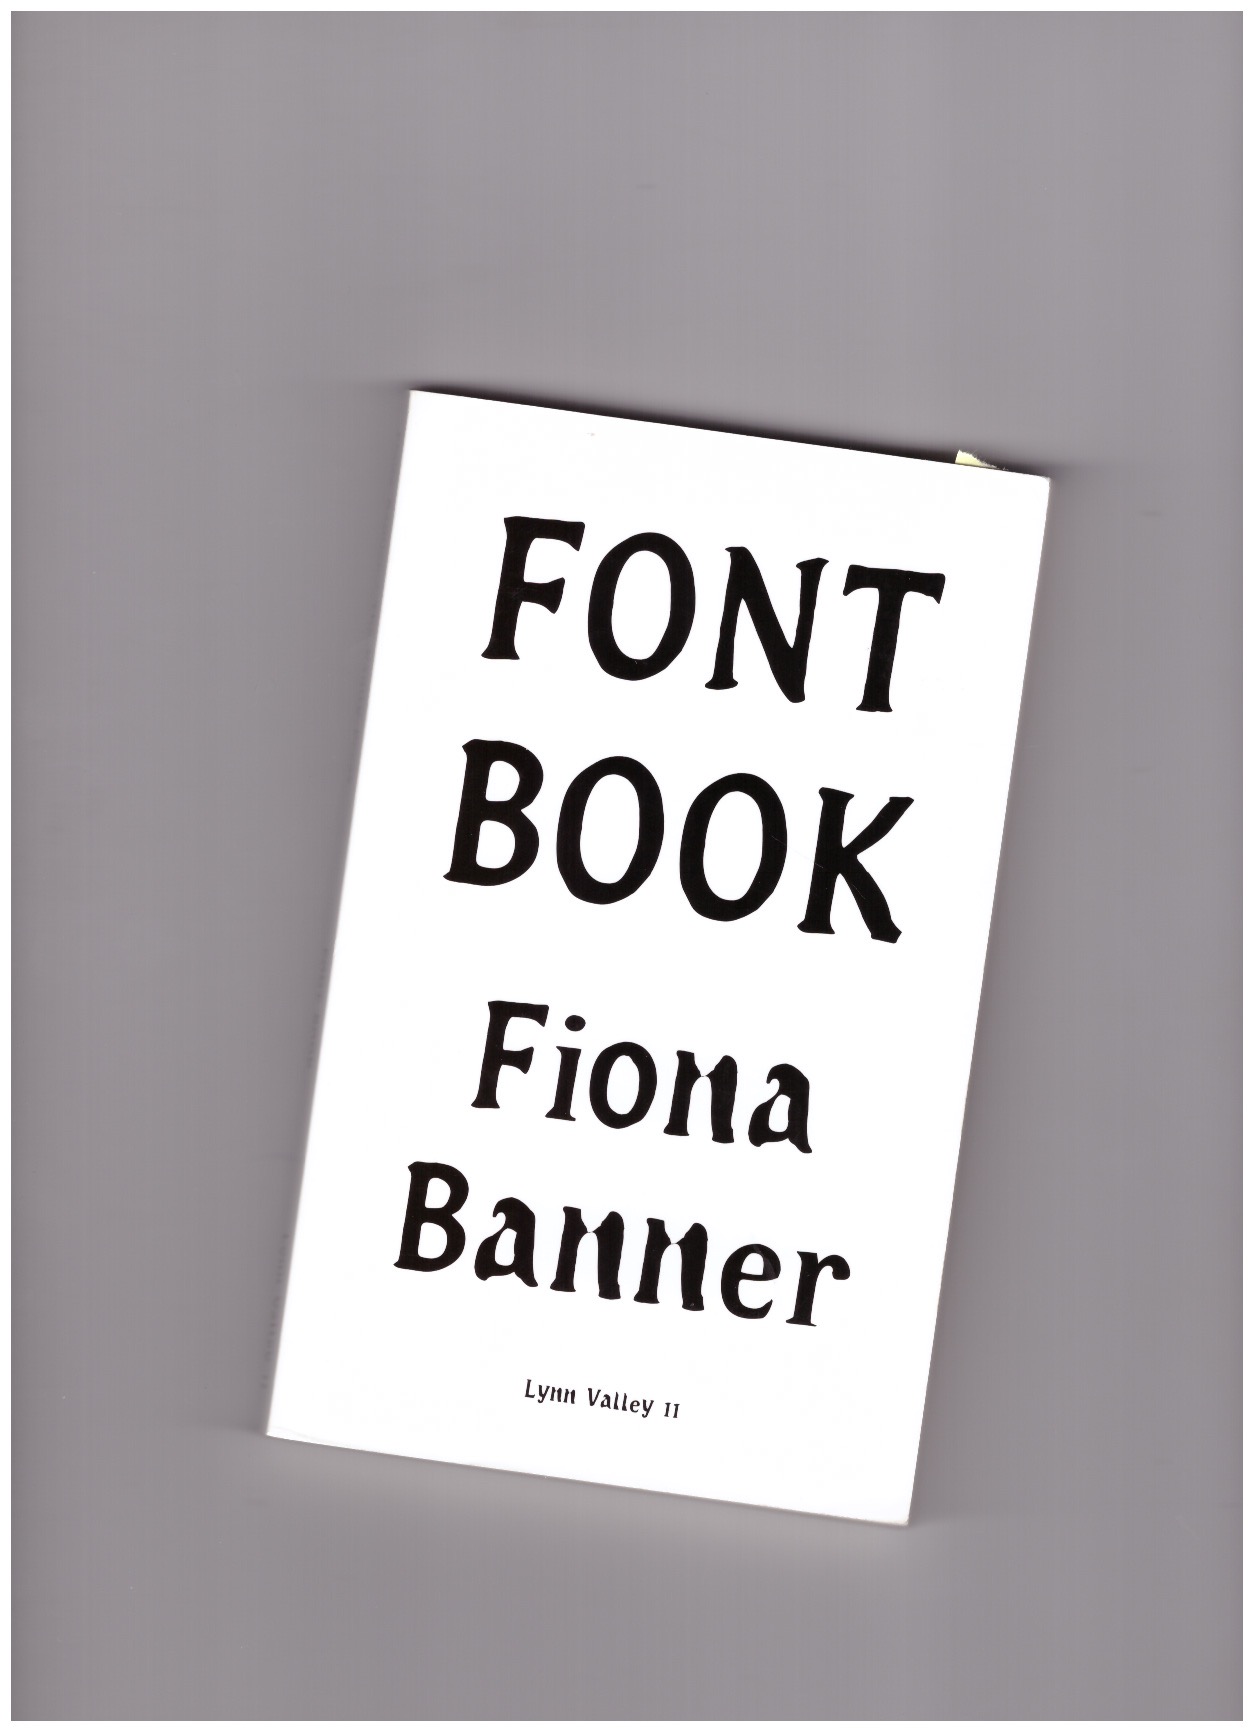 BANNER, Fiona - Font Book